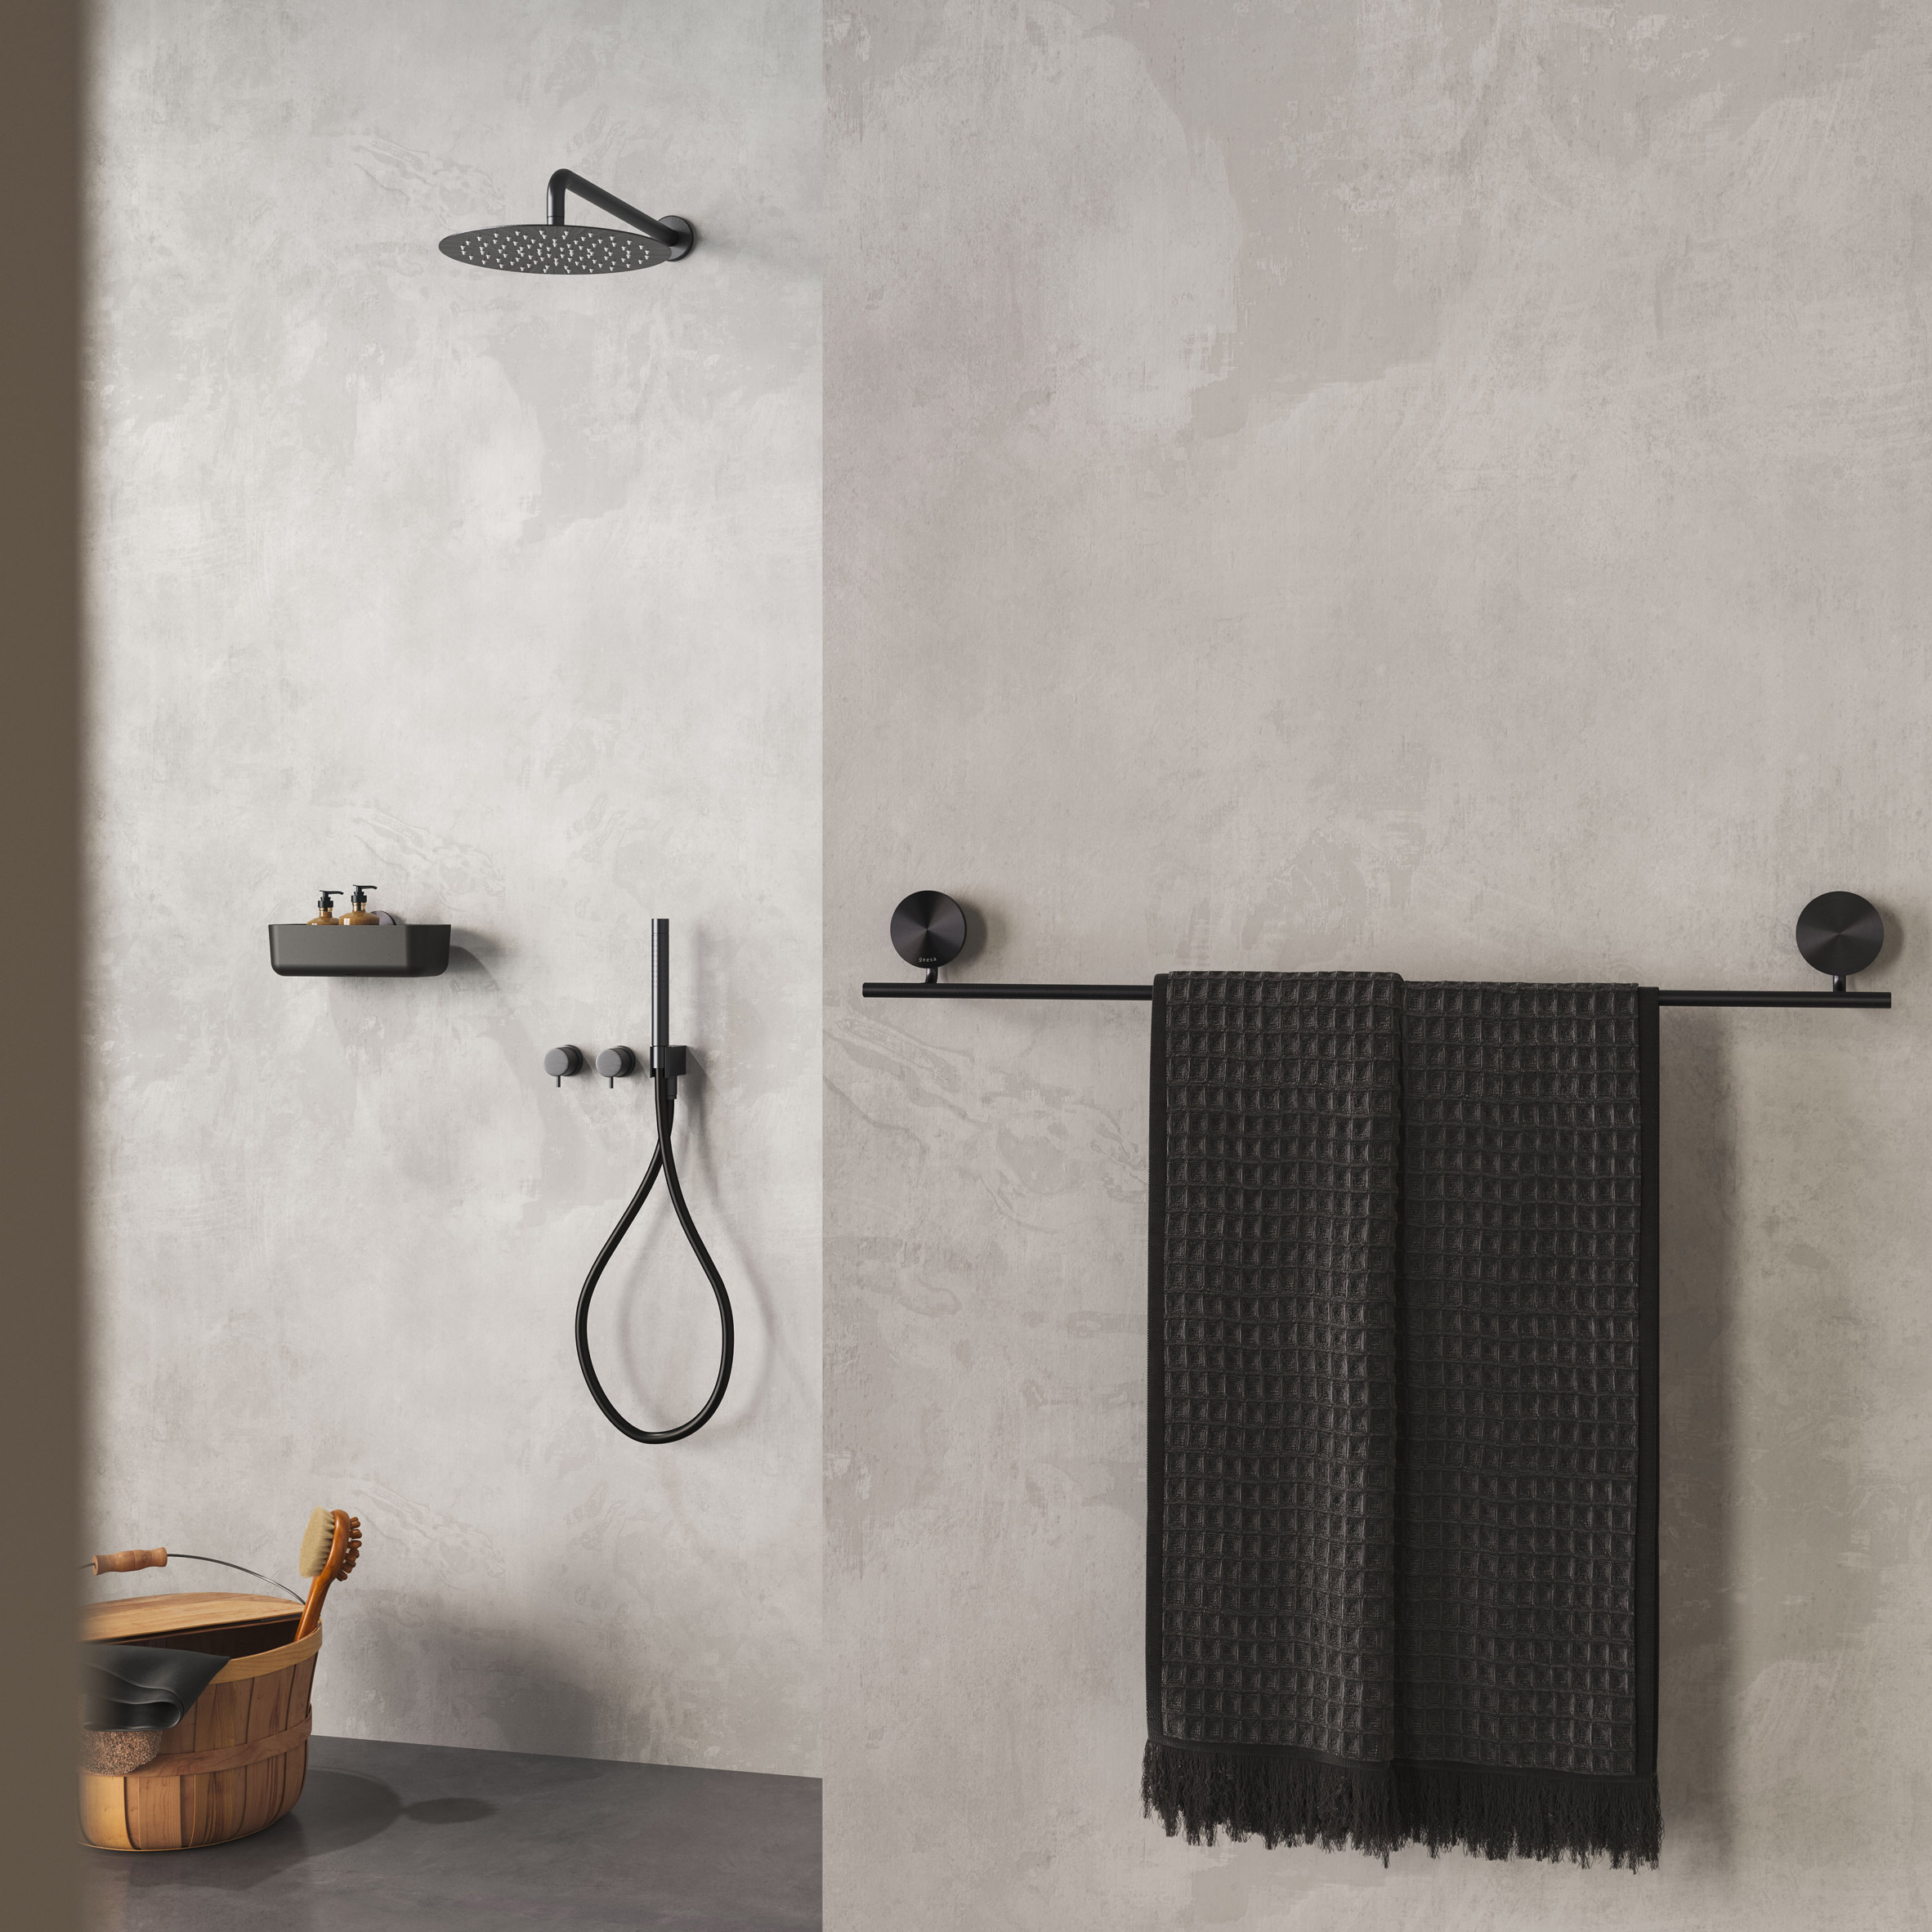 Black towel rail by a walk-in shower